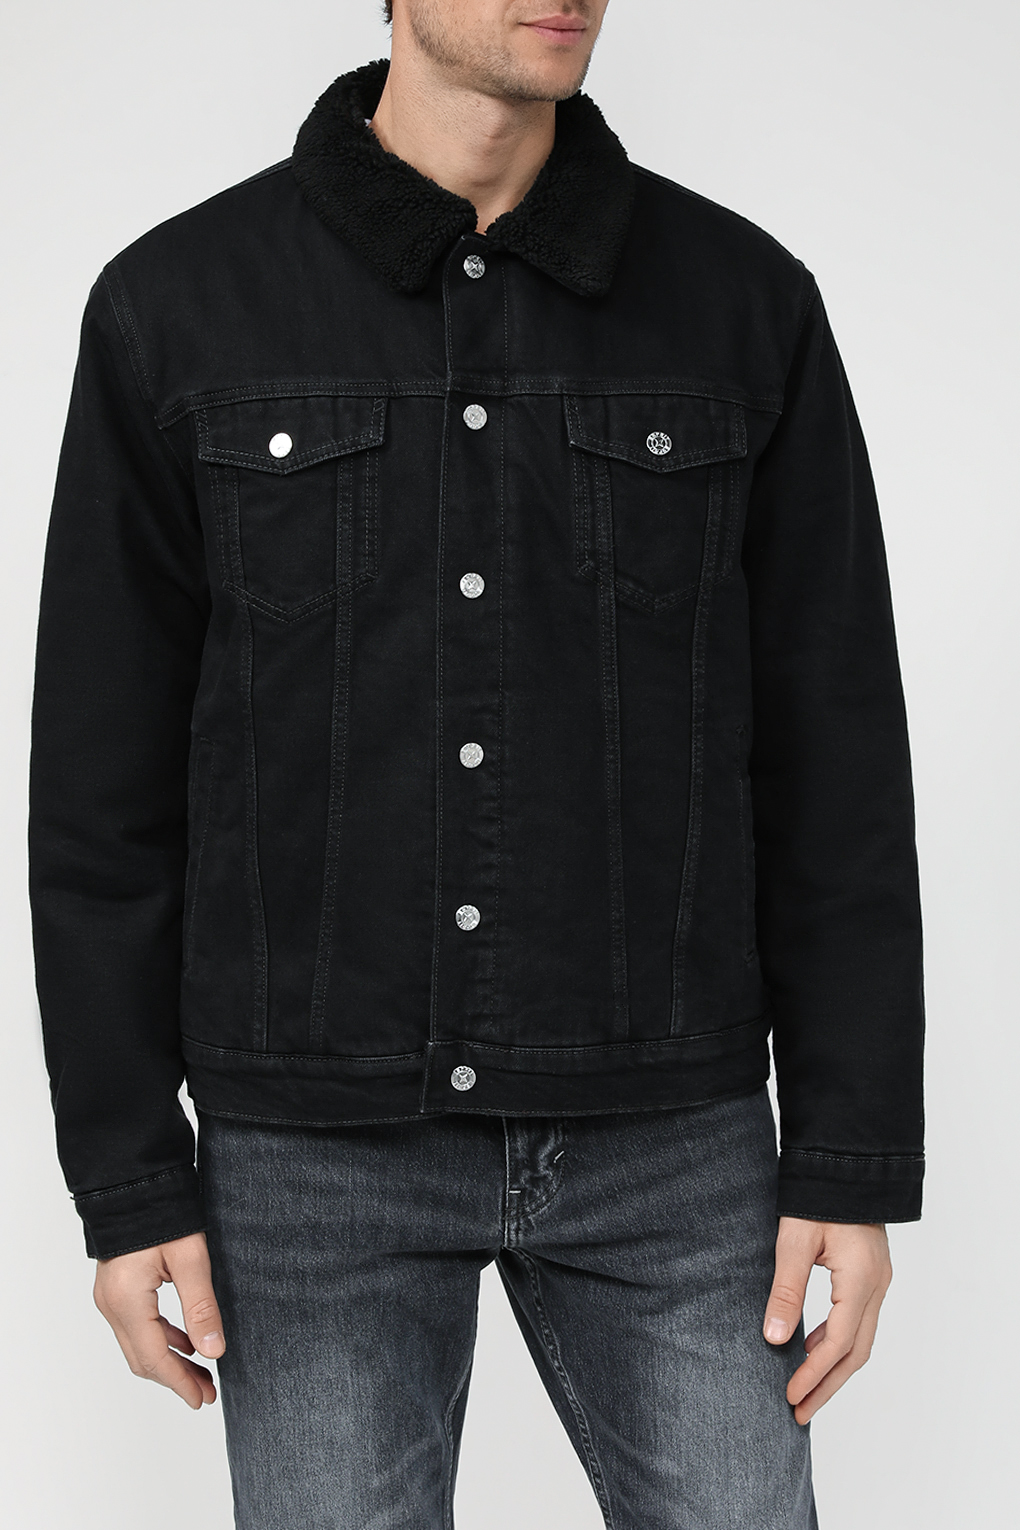 Джинсовая куртка мужская Esprit Casual 103EE2G319 черная L